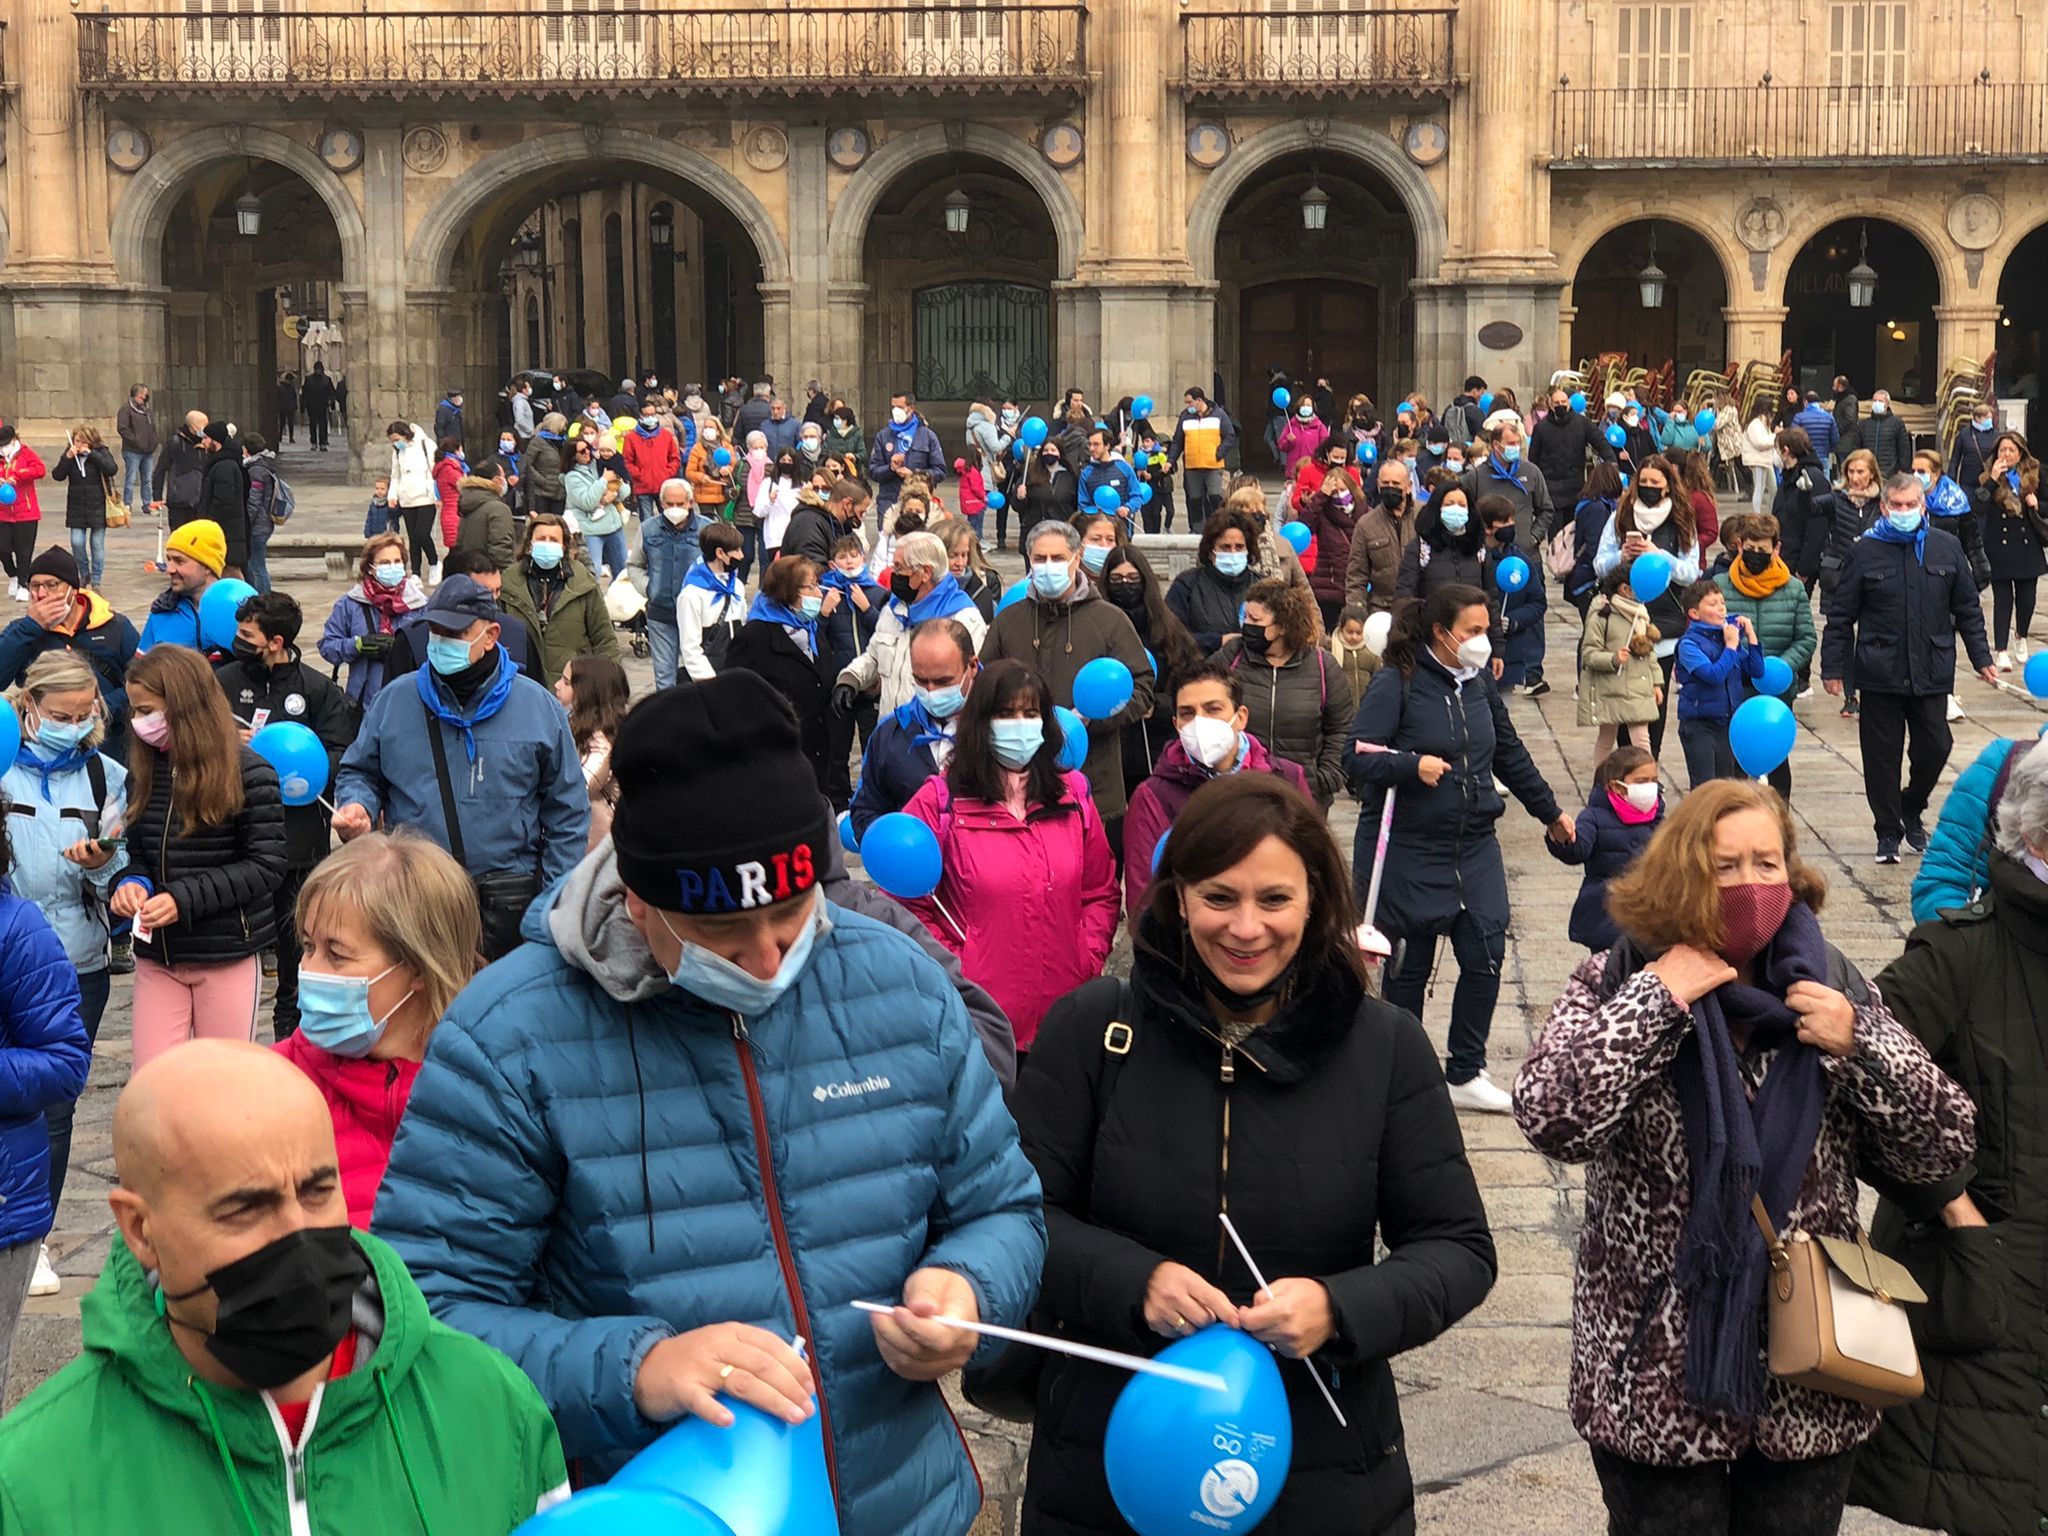 Marcha solidaria para dar visibilidad a la diabetes en Salamanca el 14 de noviembre de 2021. Foto SALAMANCA24HORAS (17)